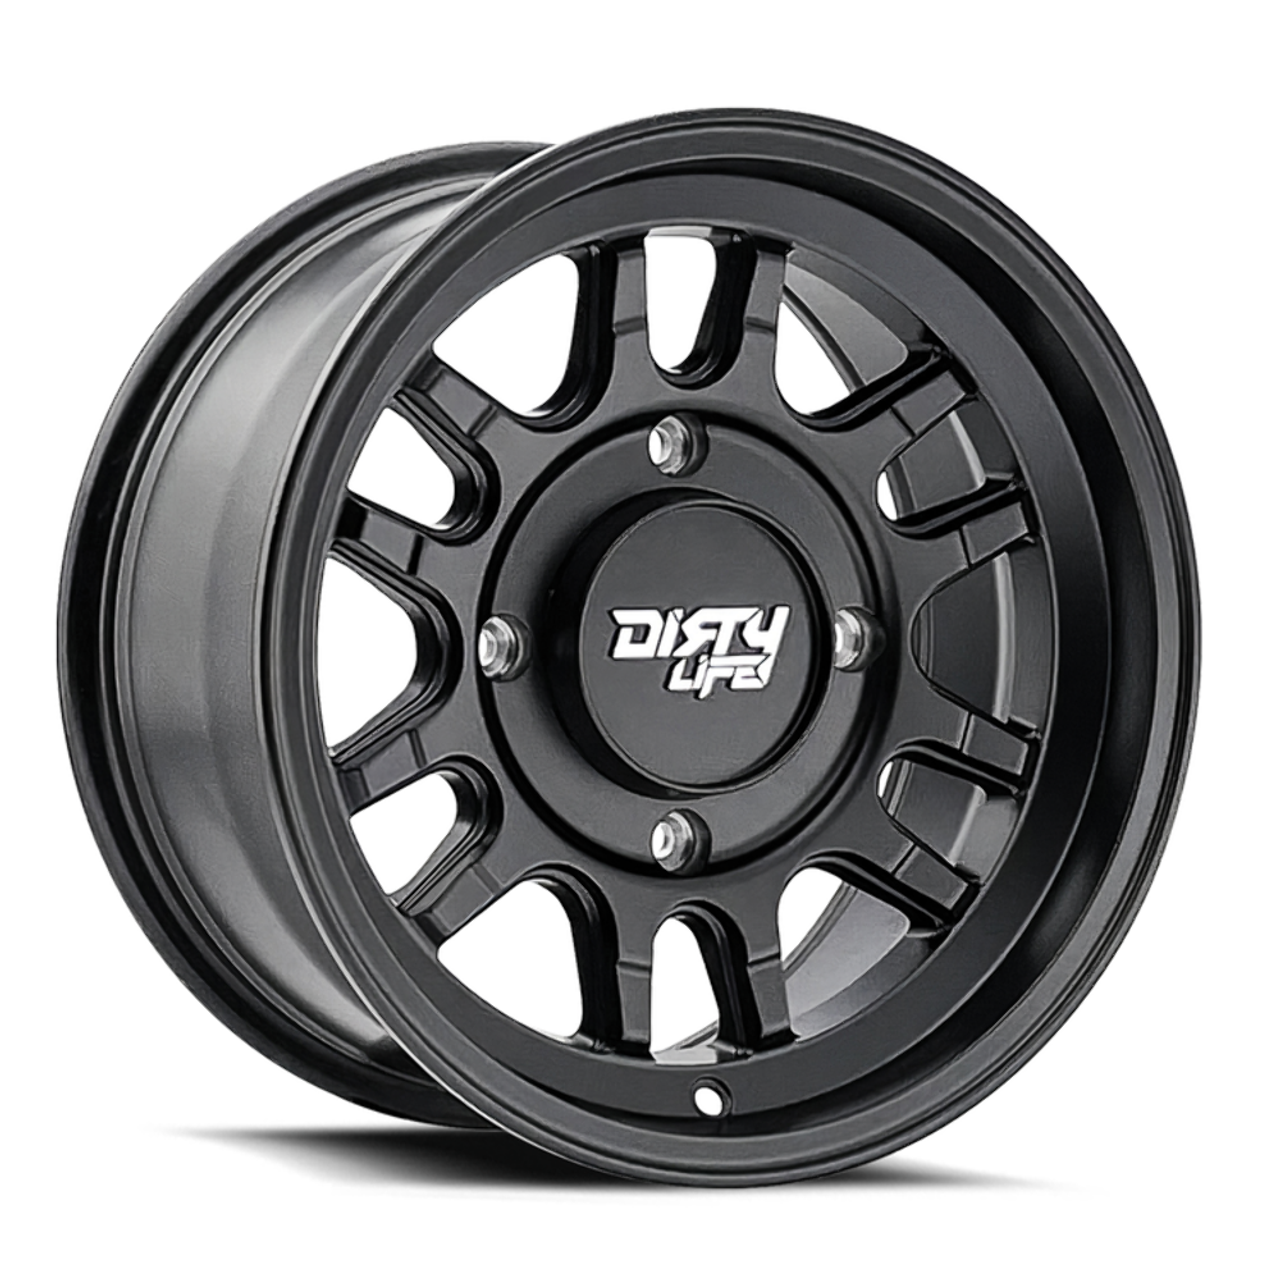 15" Dirty Life Canyon Sport SXS 15x7 Matte Black 4x137 Wheel 13mm Rim